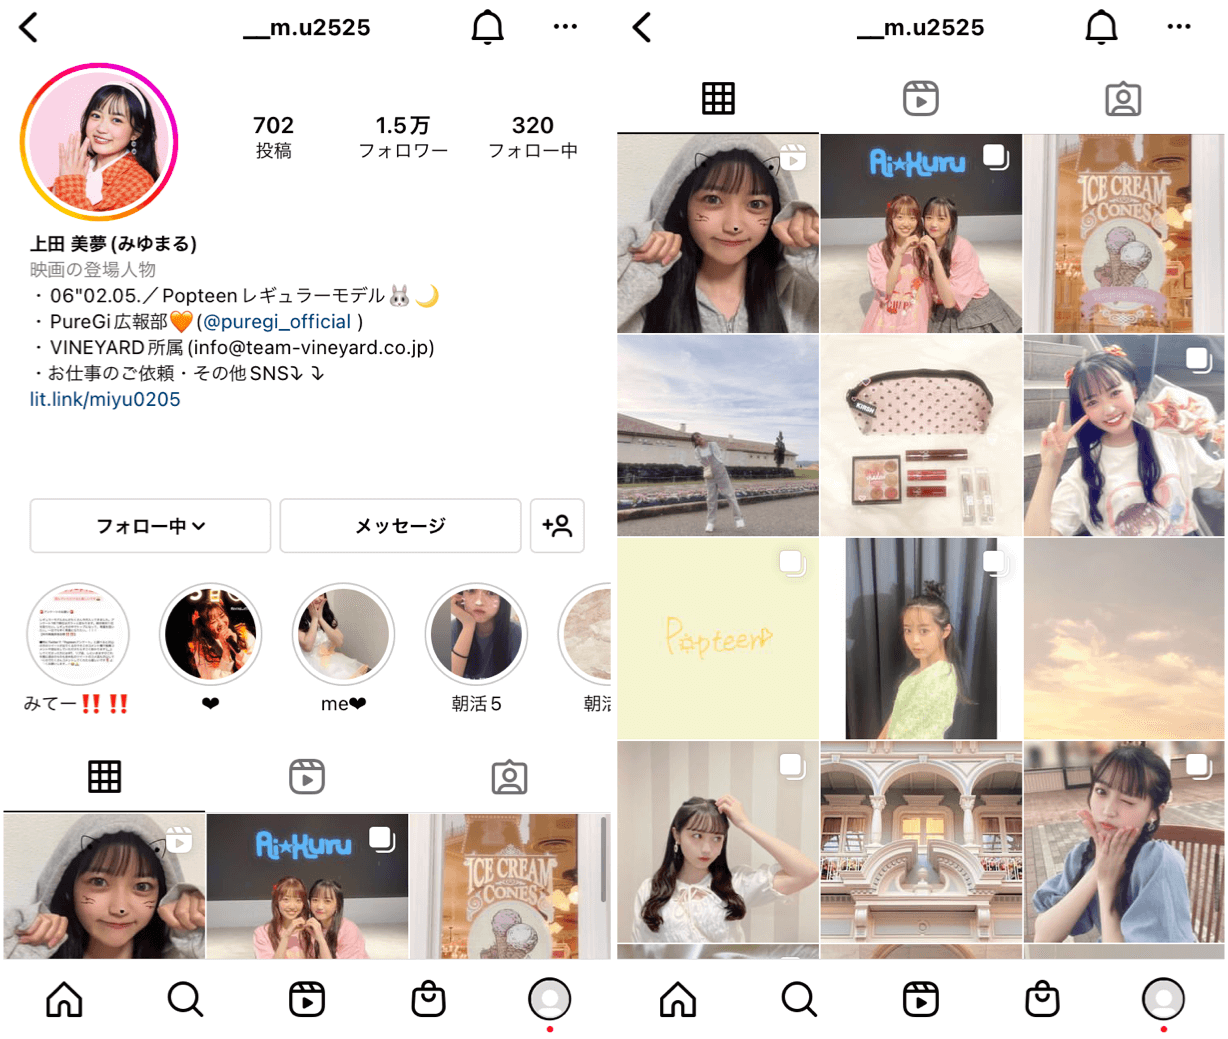 Instagram-high-school-cosmetic- __m.u2525